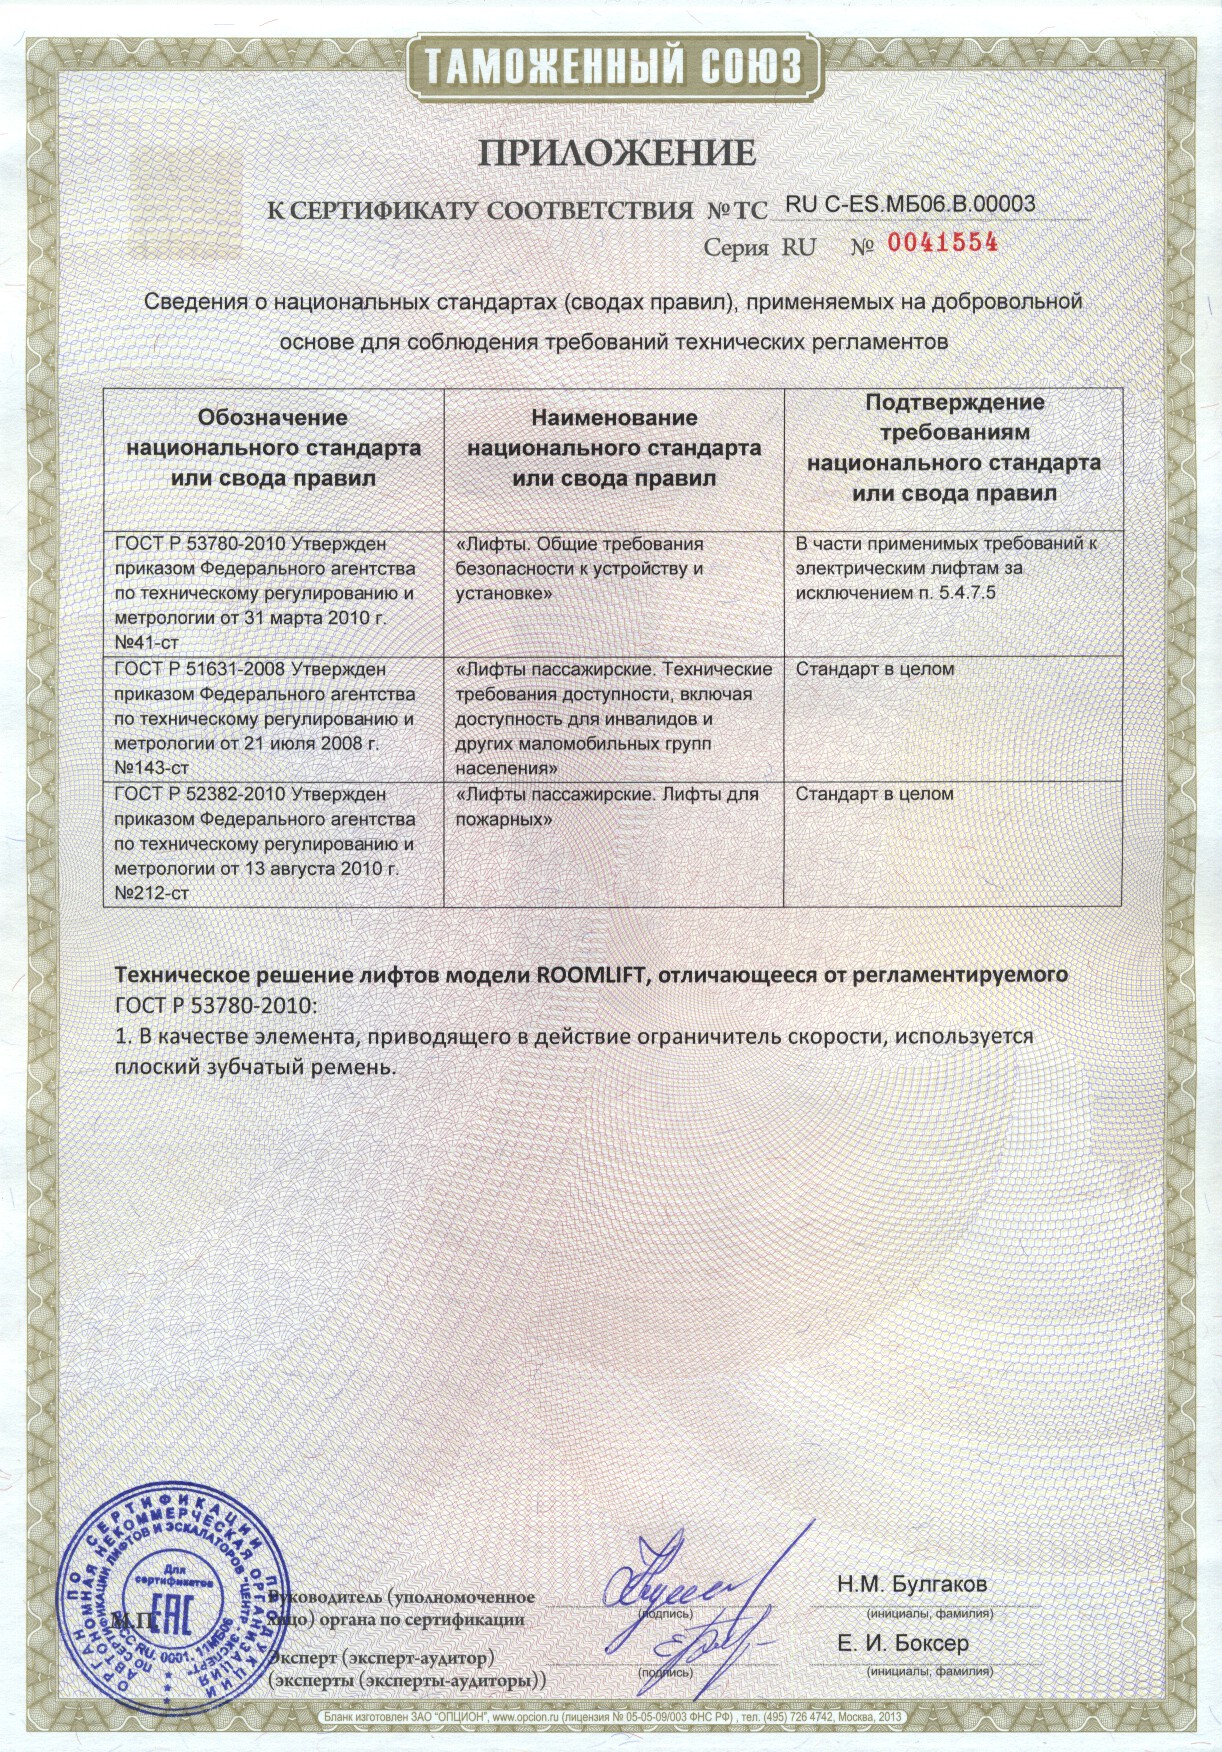 Приложение к сертификату RU C-ES.МБ06.В00003